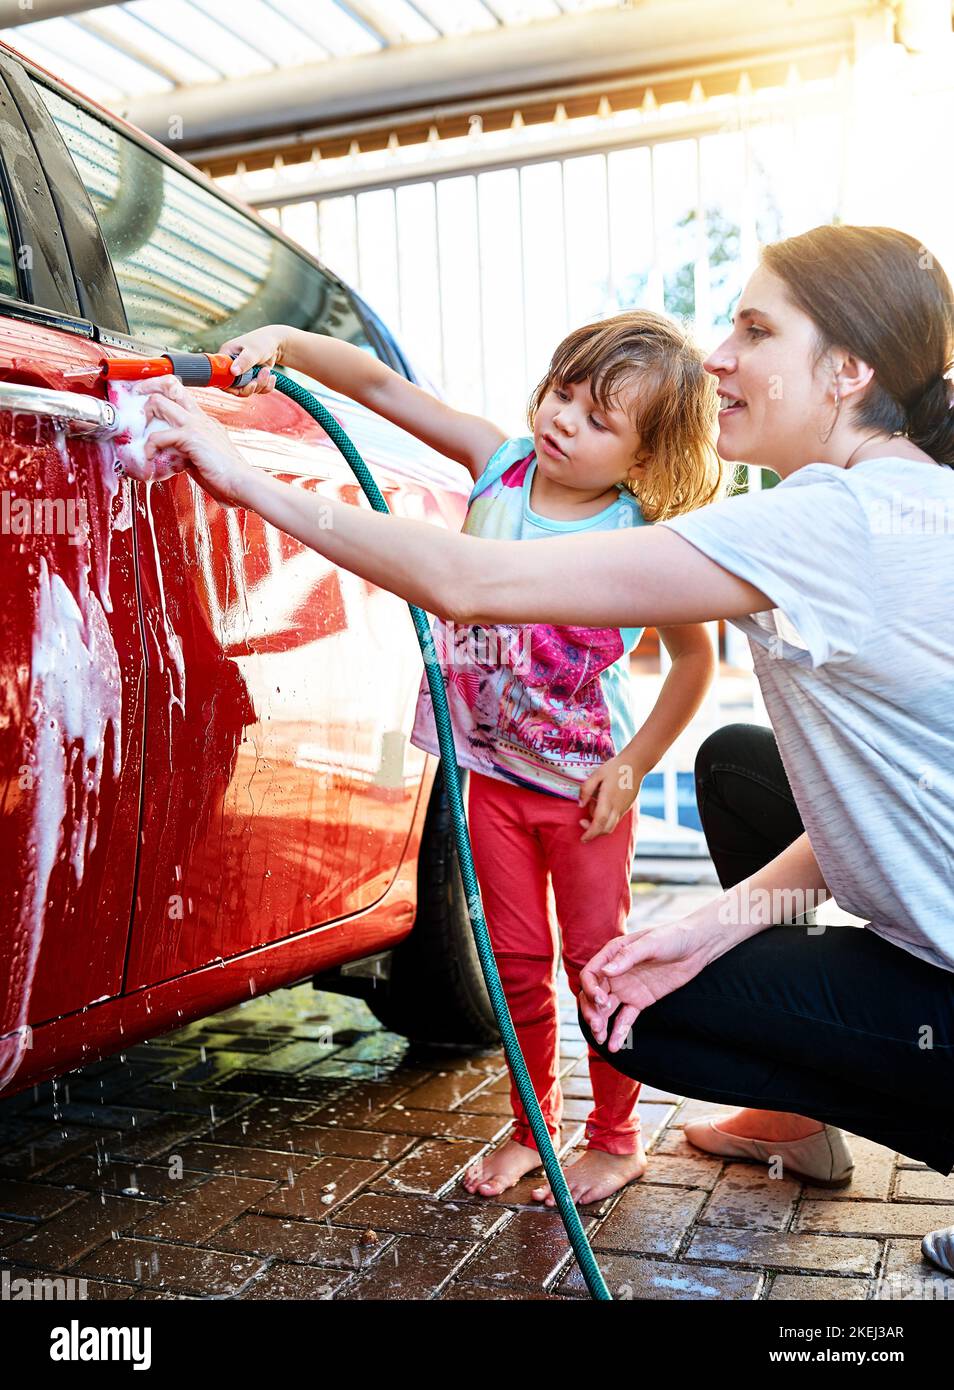 Arbeiter wäscht Auto mit Schwamm - ein lizenzfreies Stock Foto von Photocase